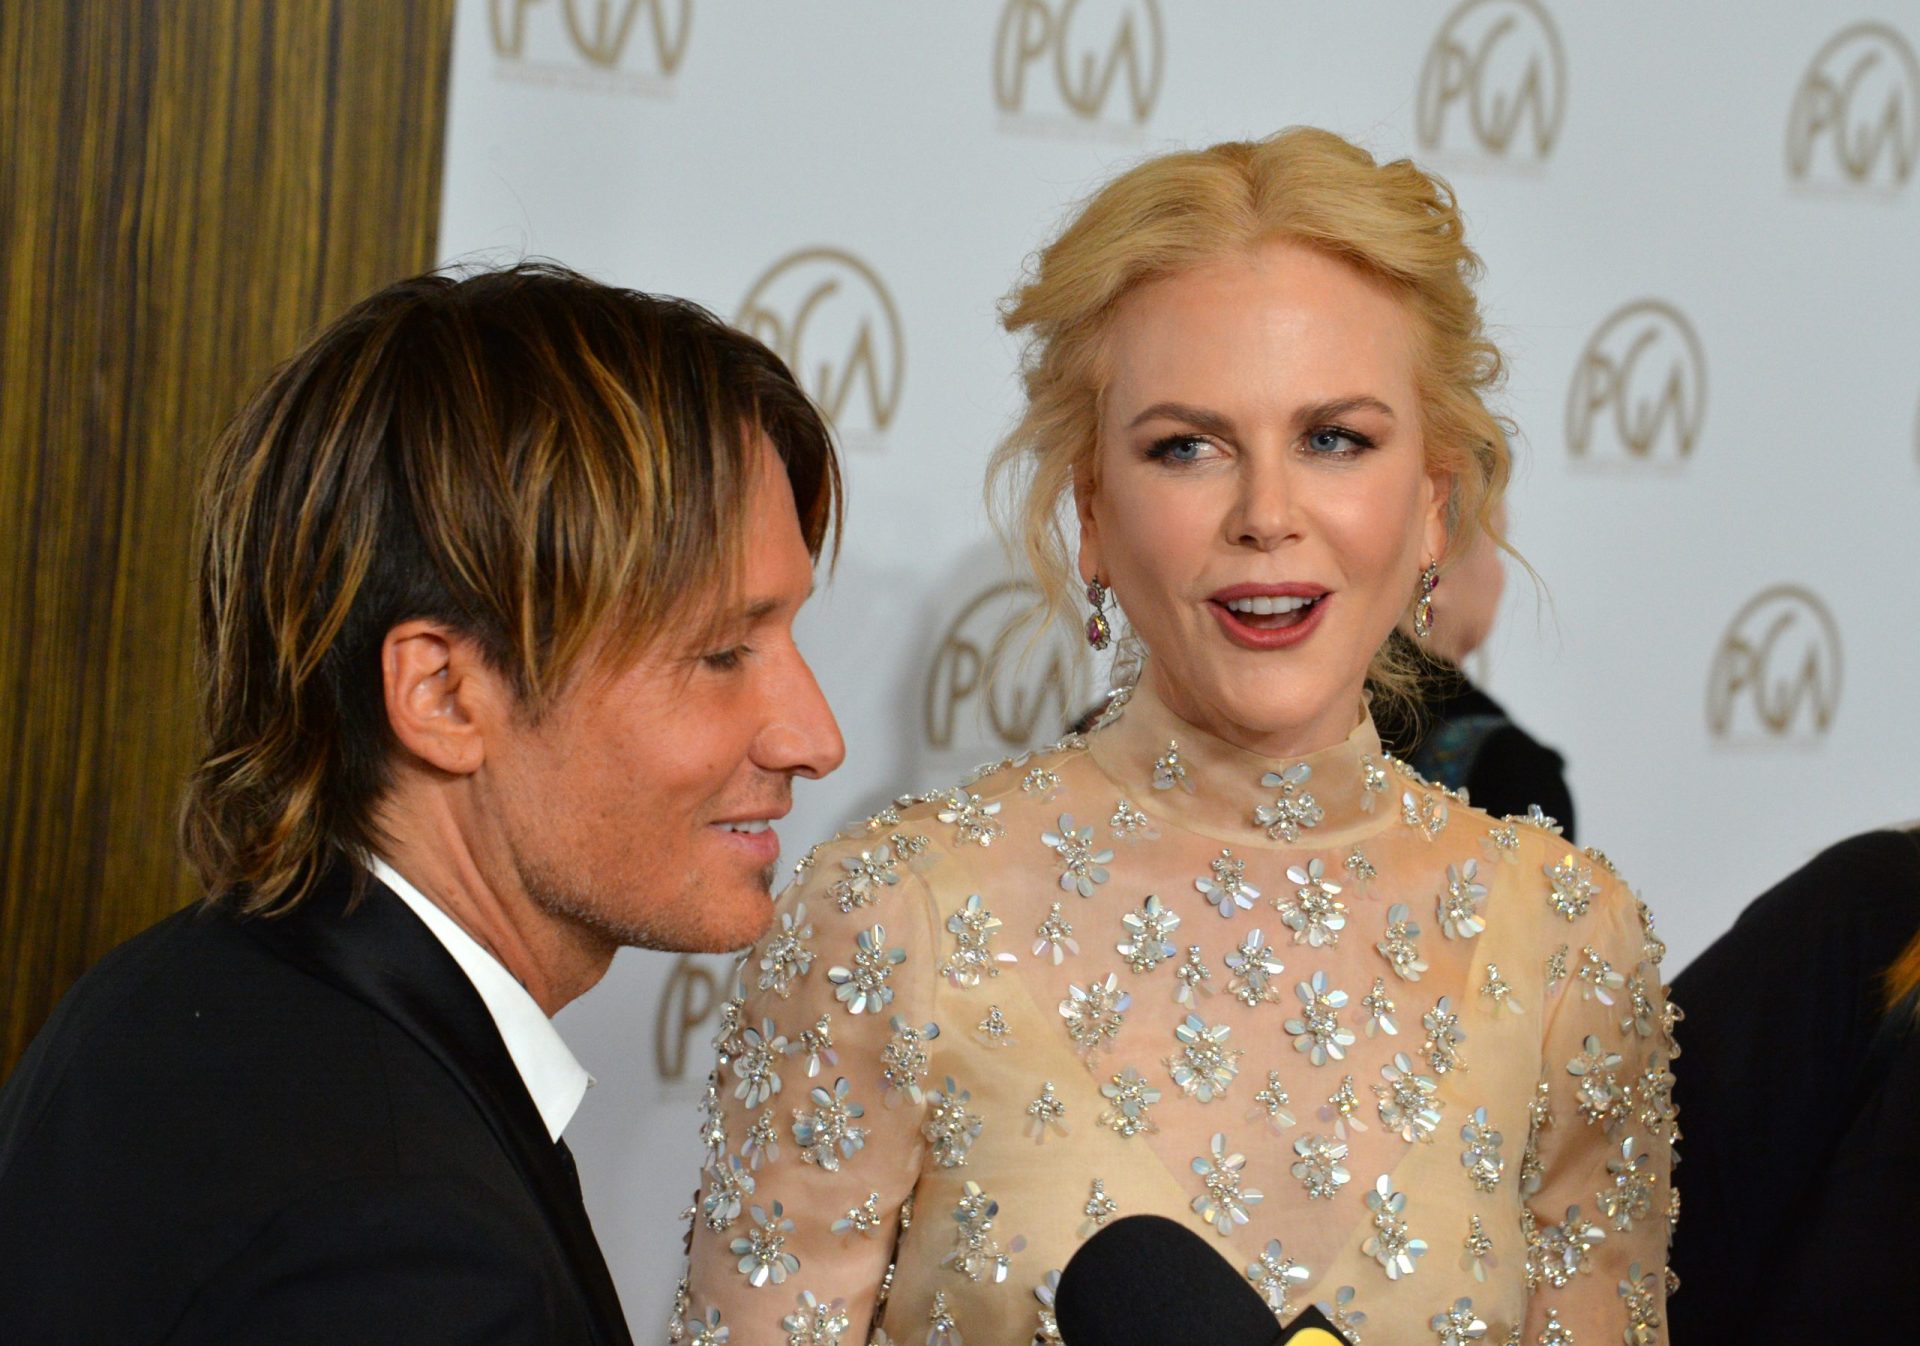 Noite de ópera acabou mal para Nicole Kidman e Keith Urban